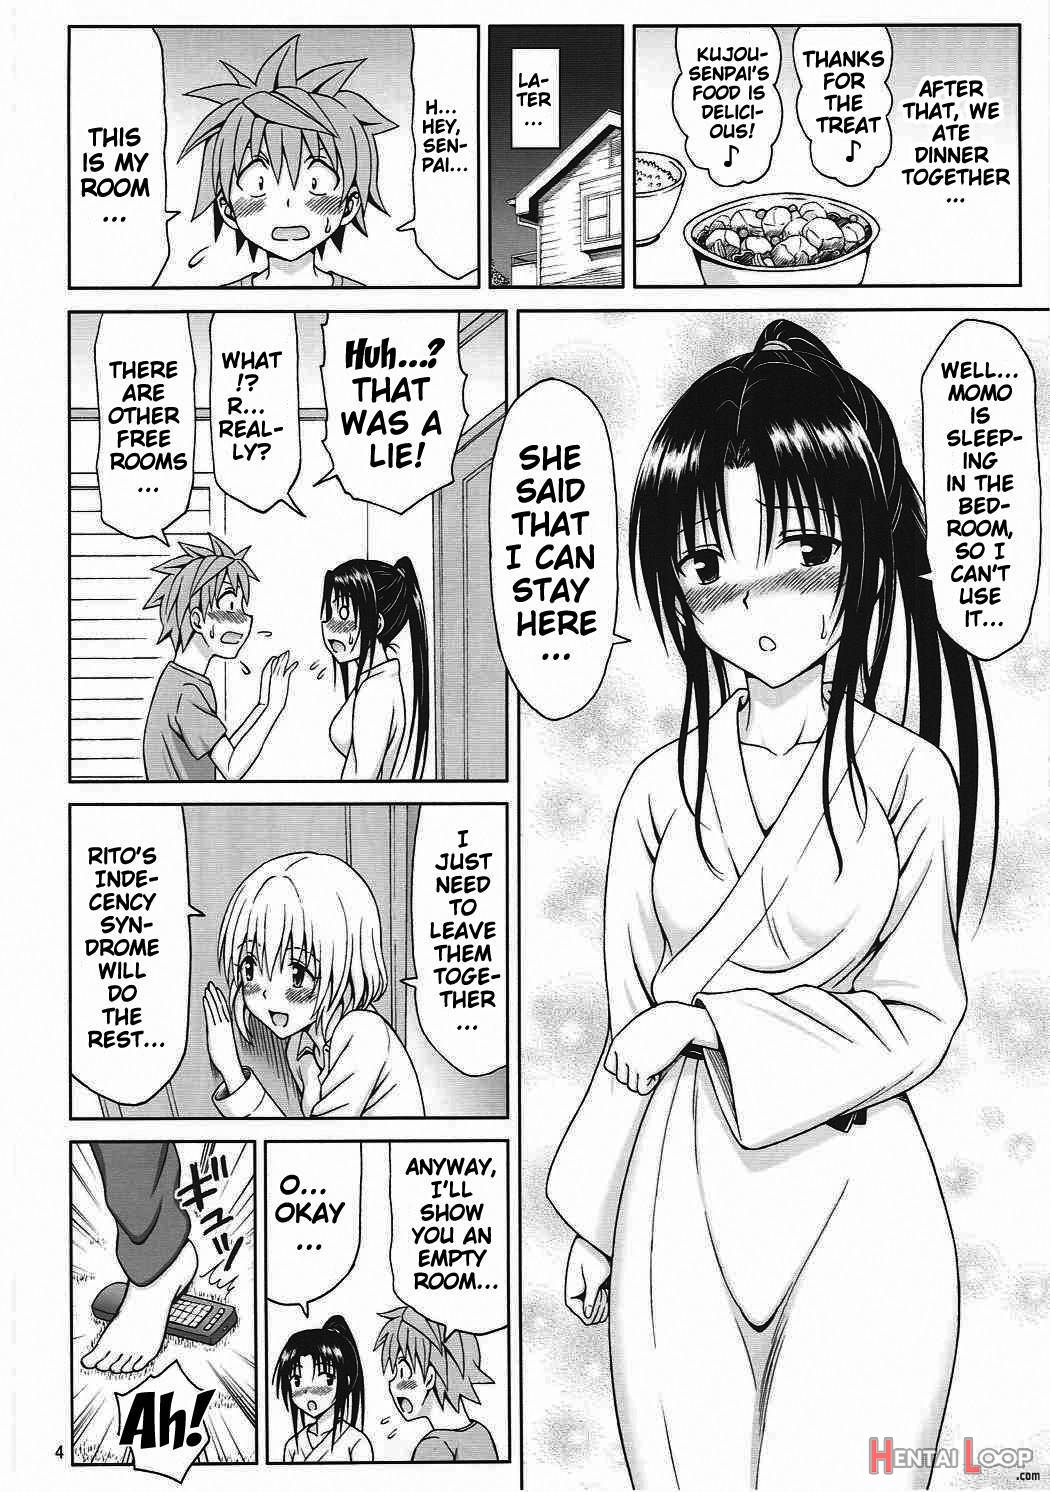 Kujou Senpai No Osasoi Wa Kotowarenai! page 3